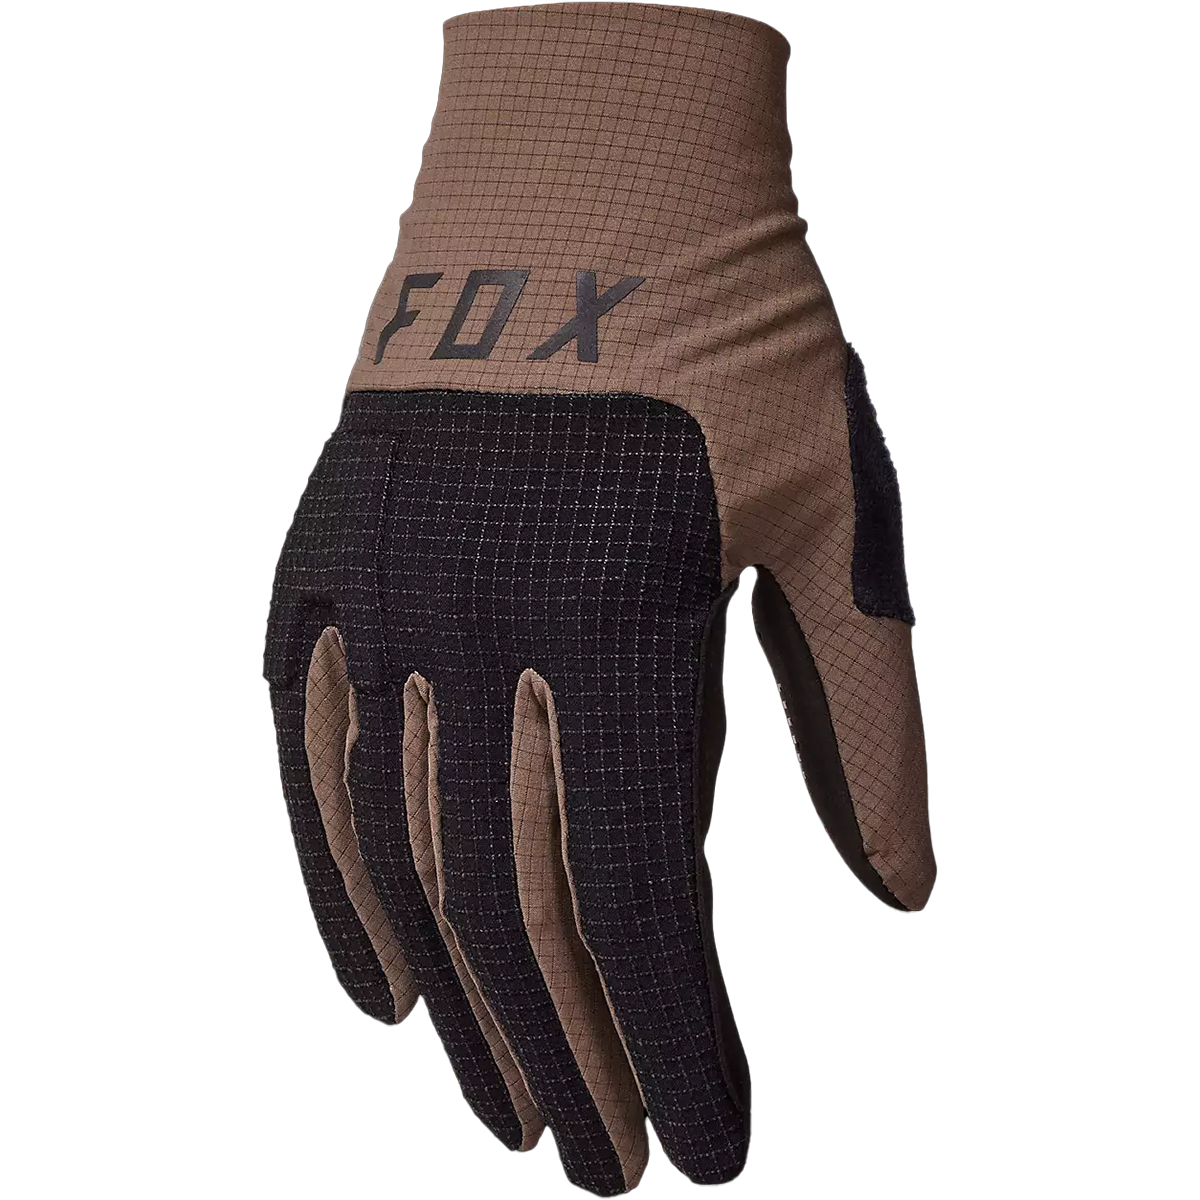 Flexair Pro Glove alternate view